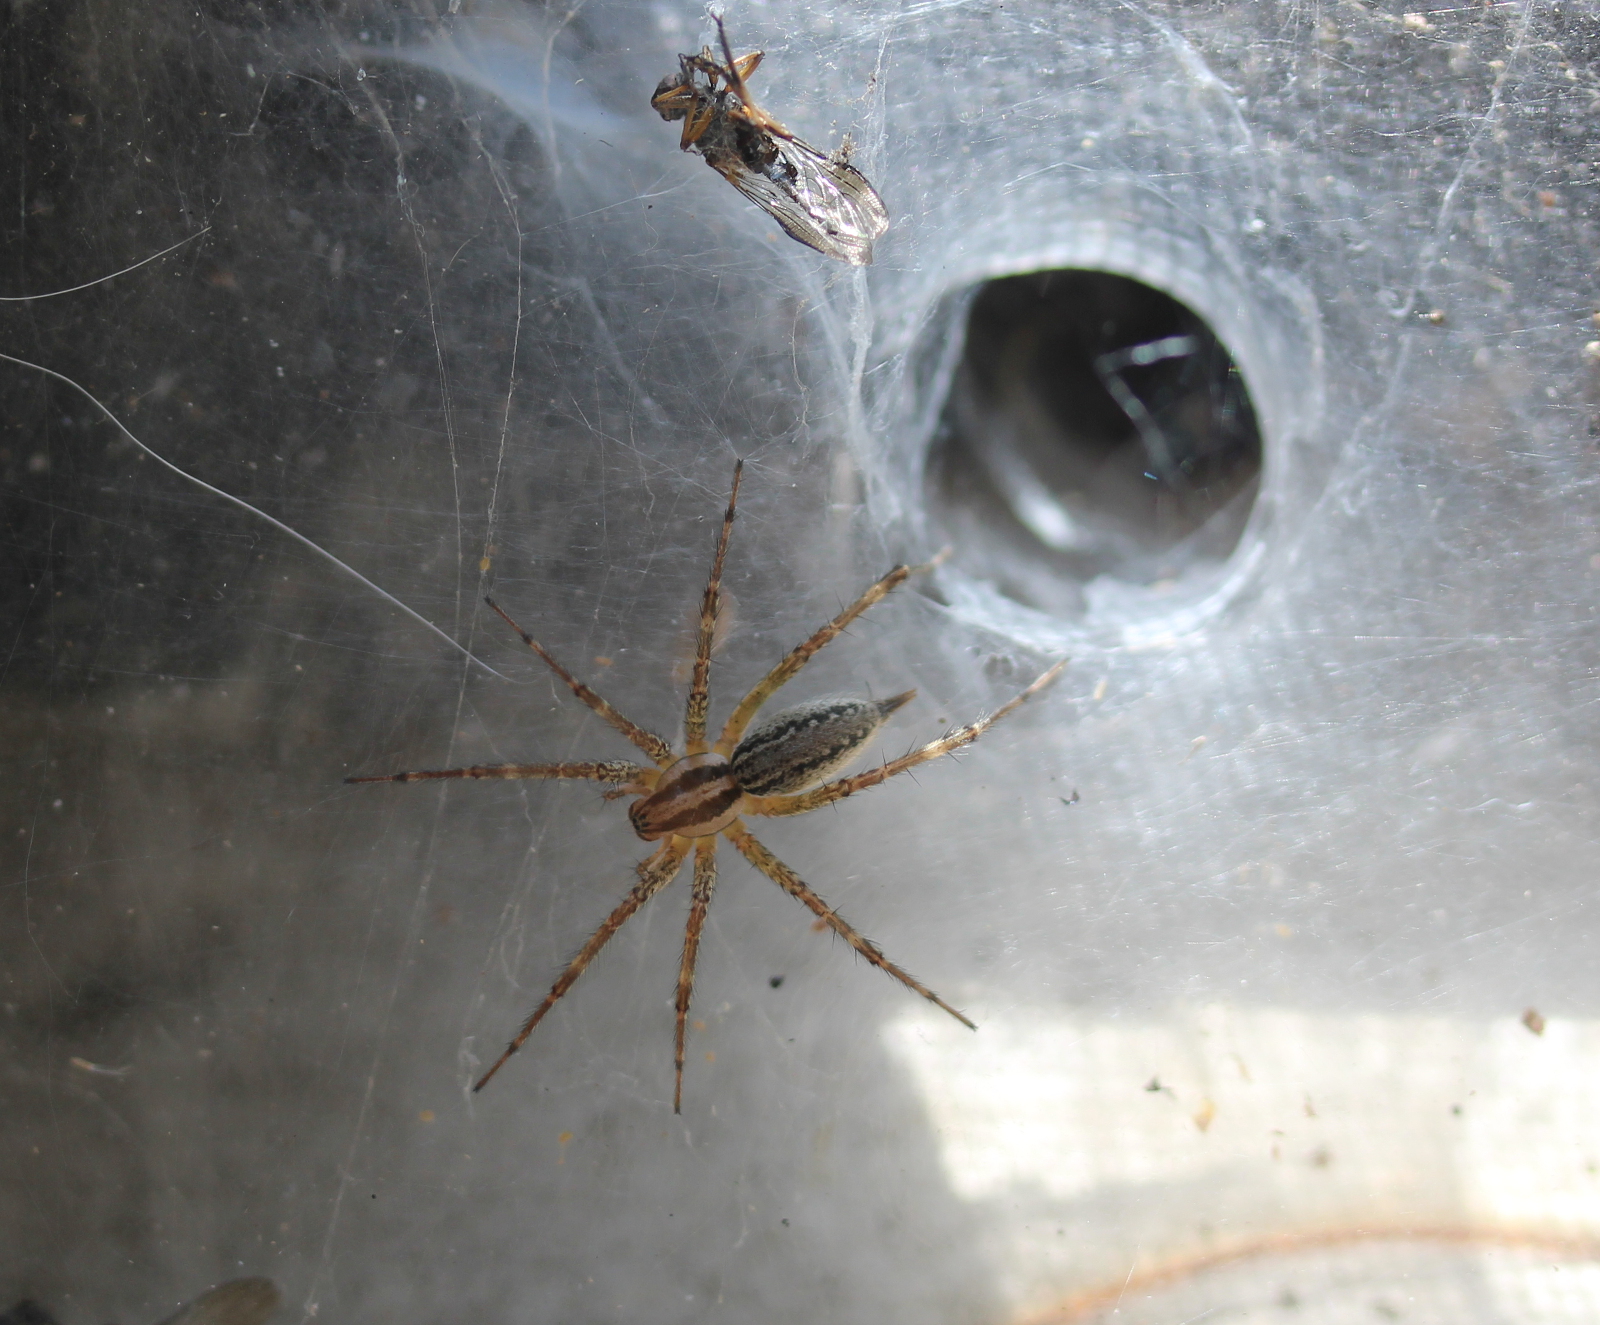 Spider (Agelenid) on web